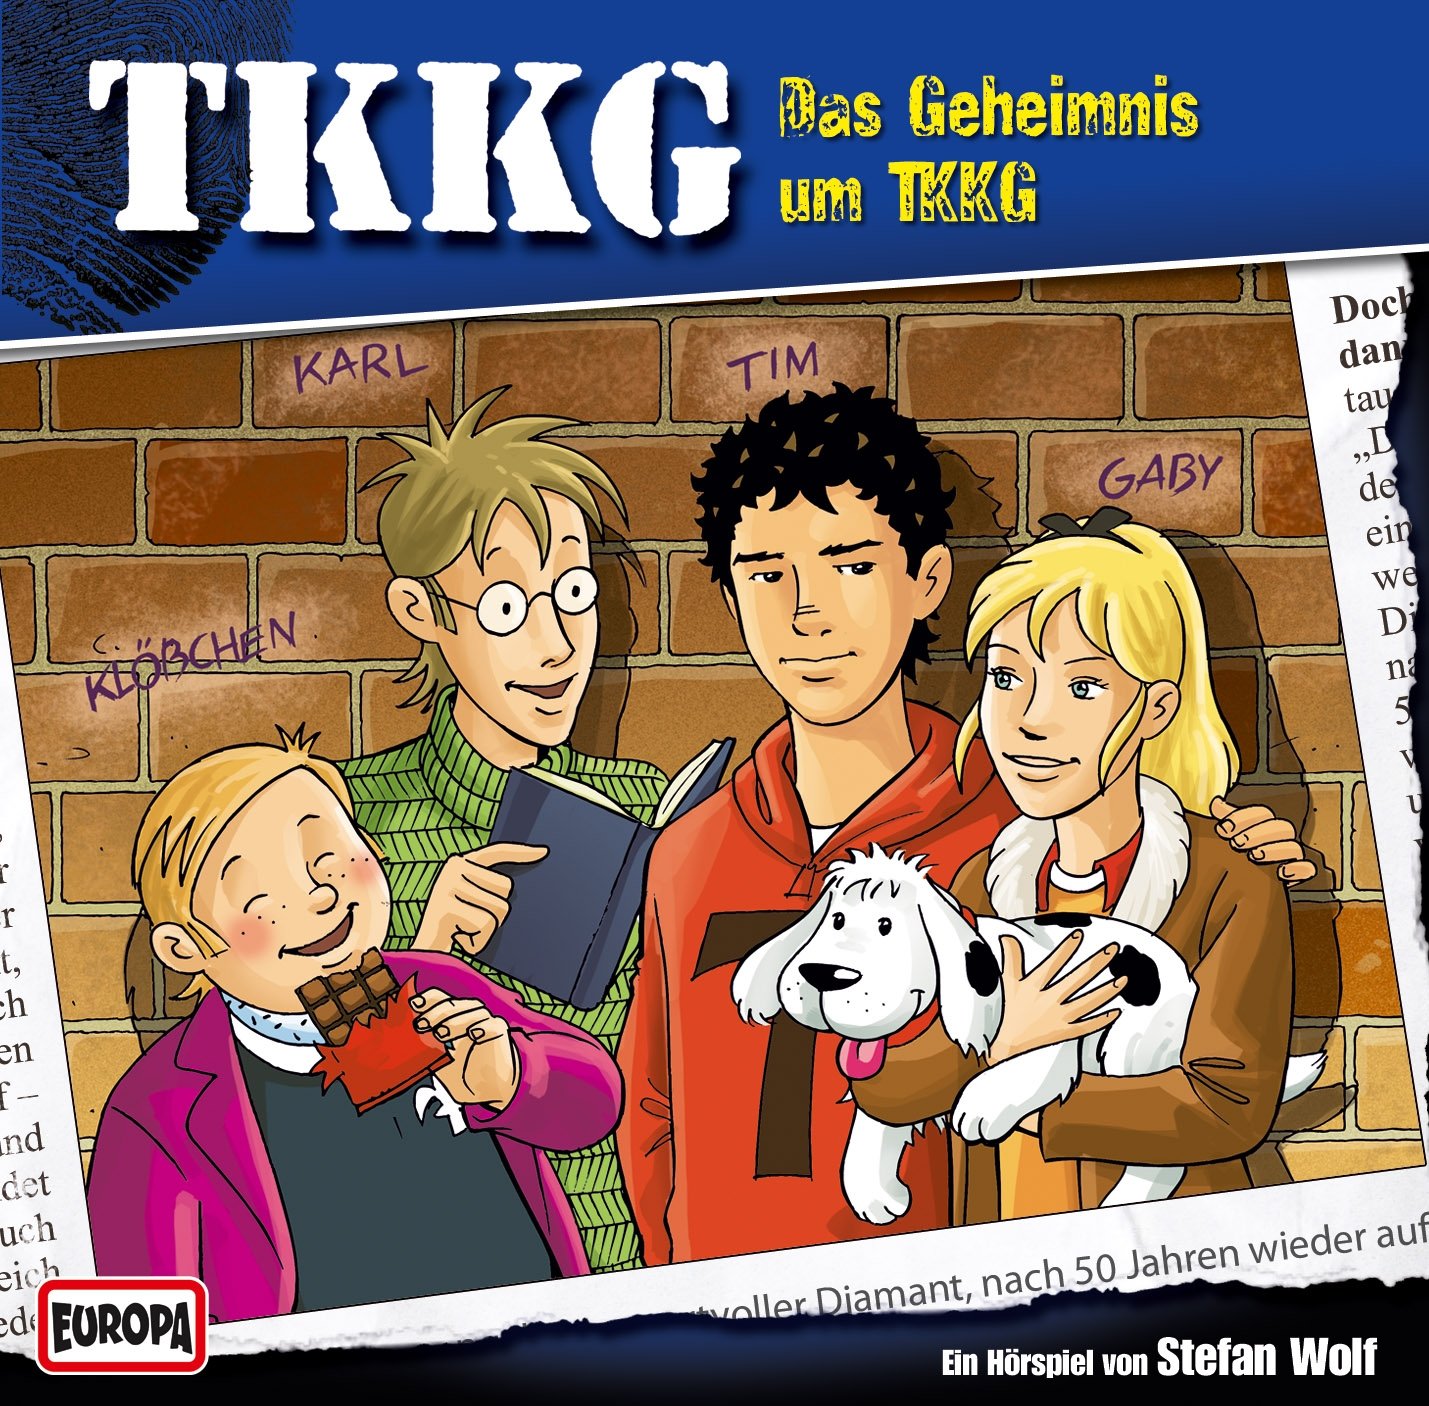 TKKG: Das Geheimnis um TKKG (Neuaufnahme)